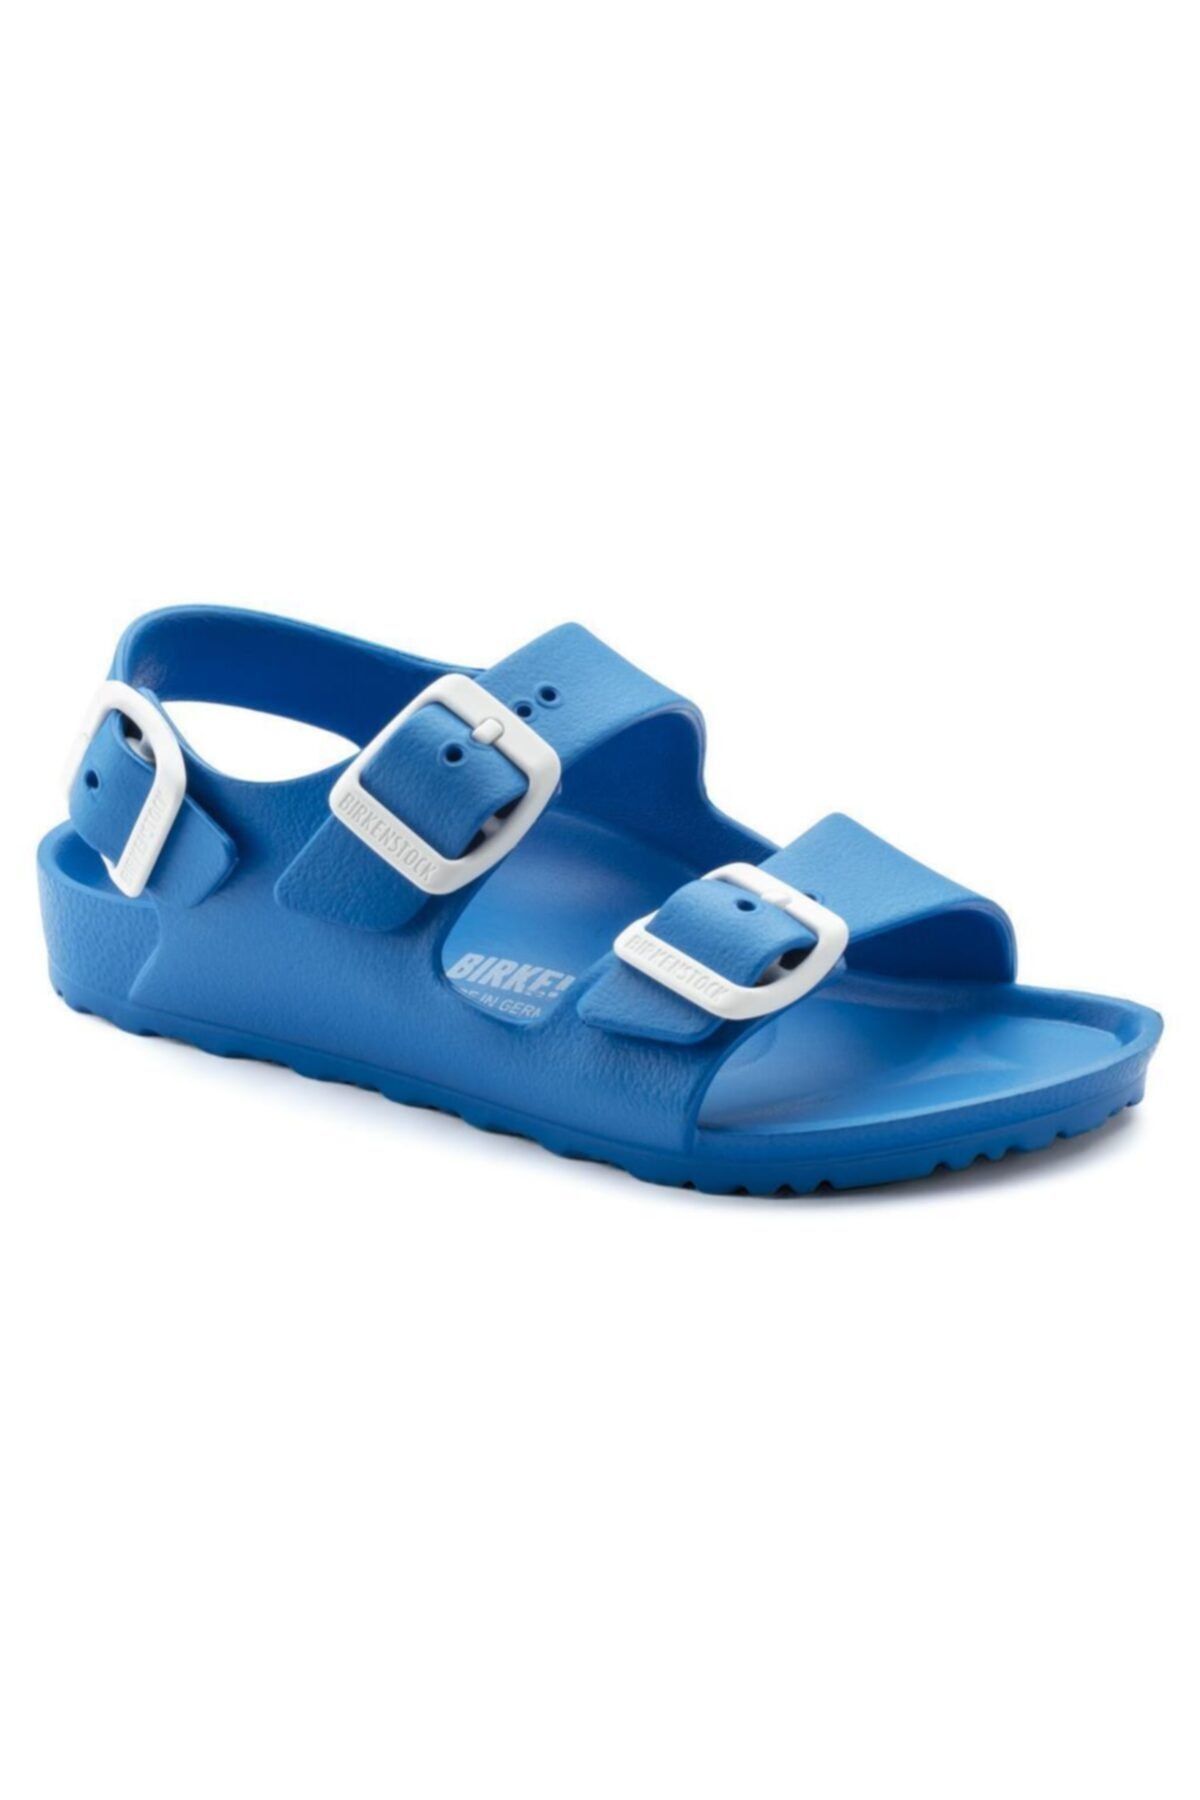 Birkenstock 1009355 Milano Eva Scuba Blue Çocuk Sandalet